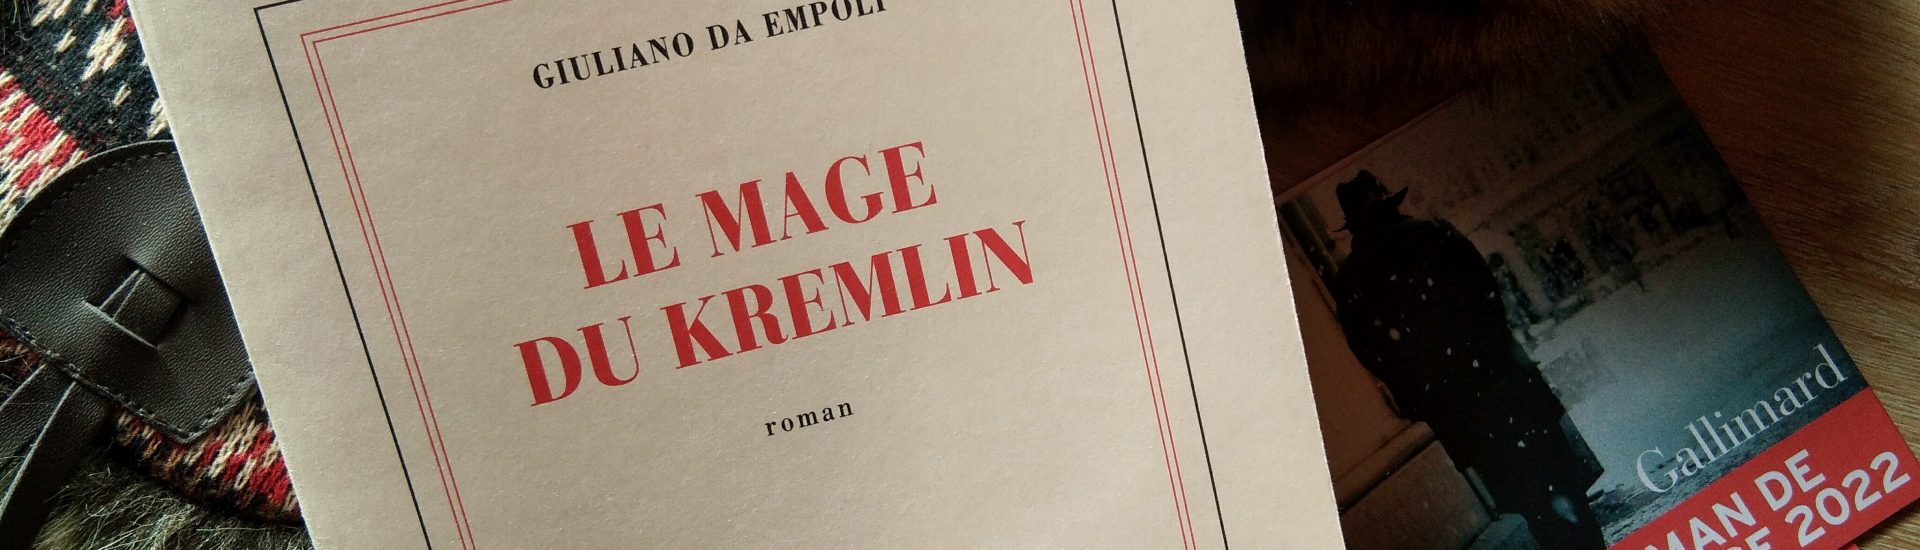 "Le mage du kremlin", ambiance lecture fond bois avec chapka